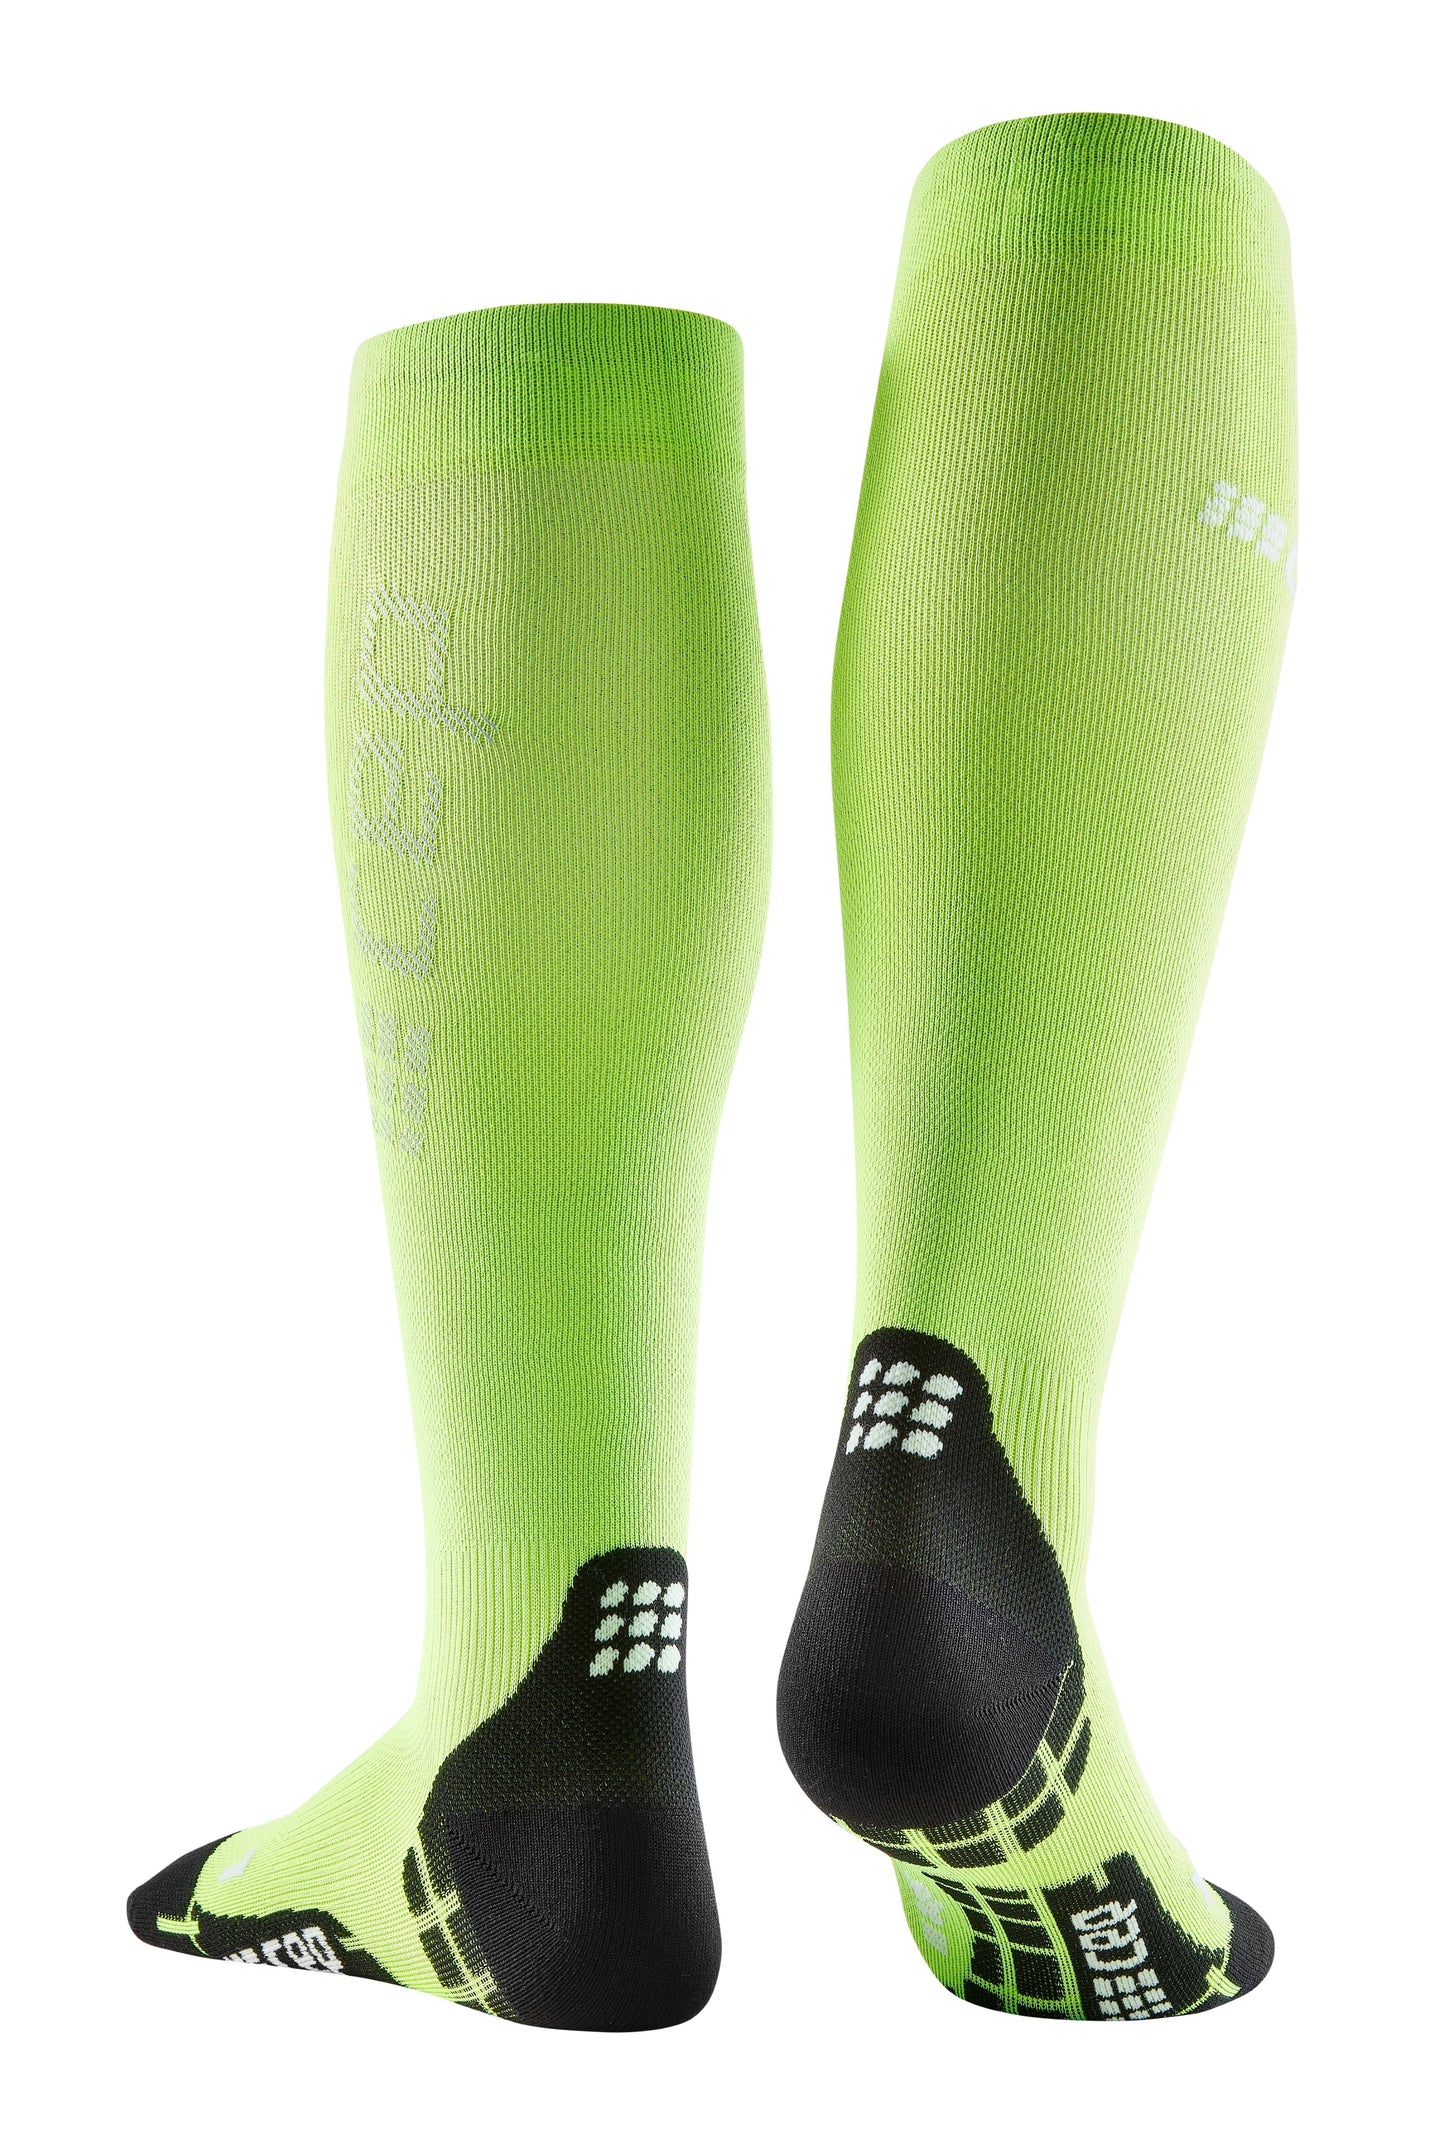 CEP Ultralight Compression Sock Tall Women's - Flash Green / Black